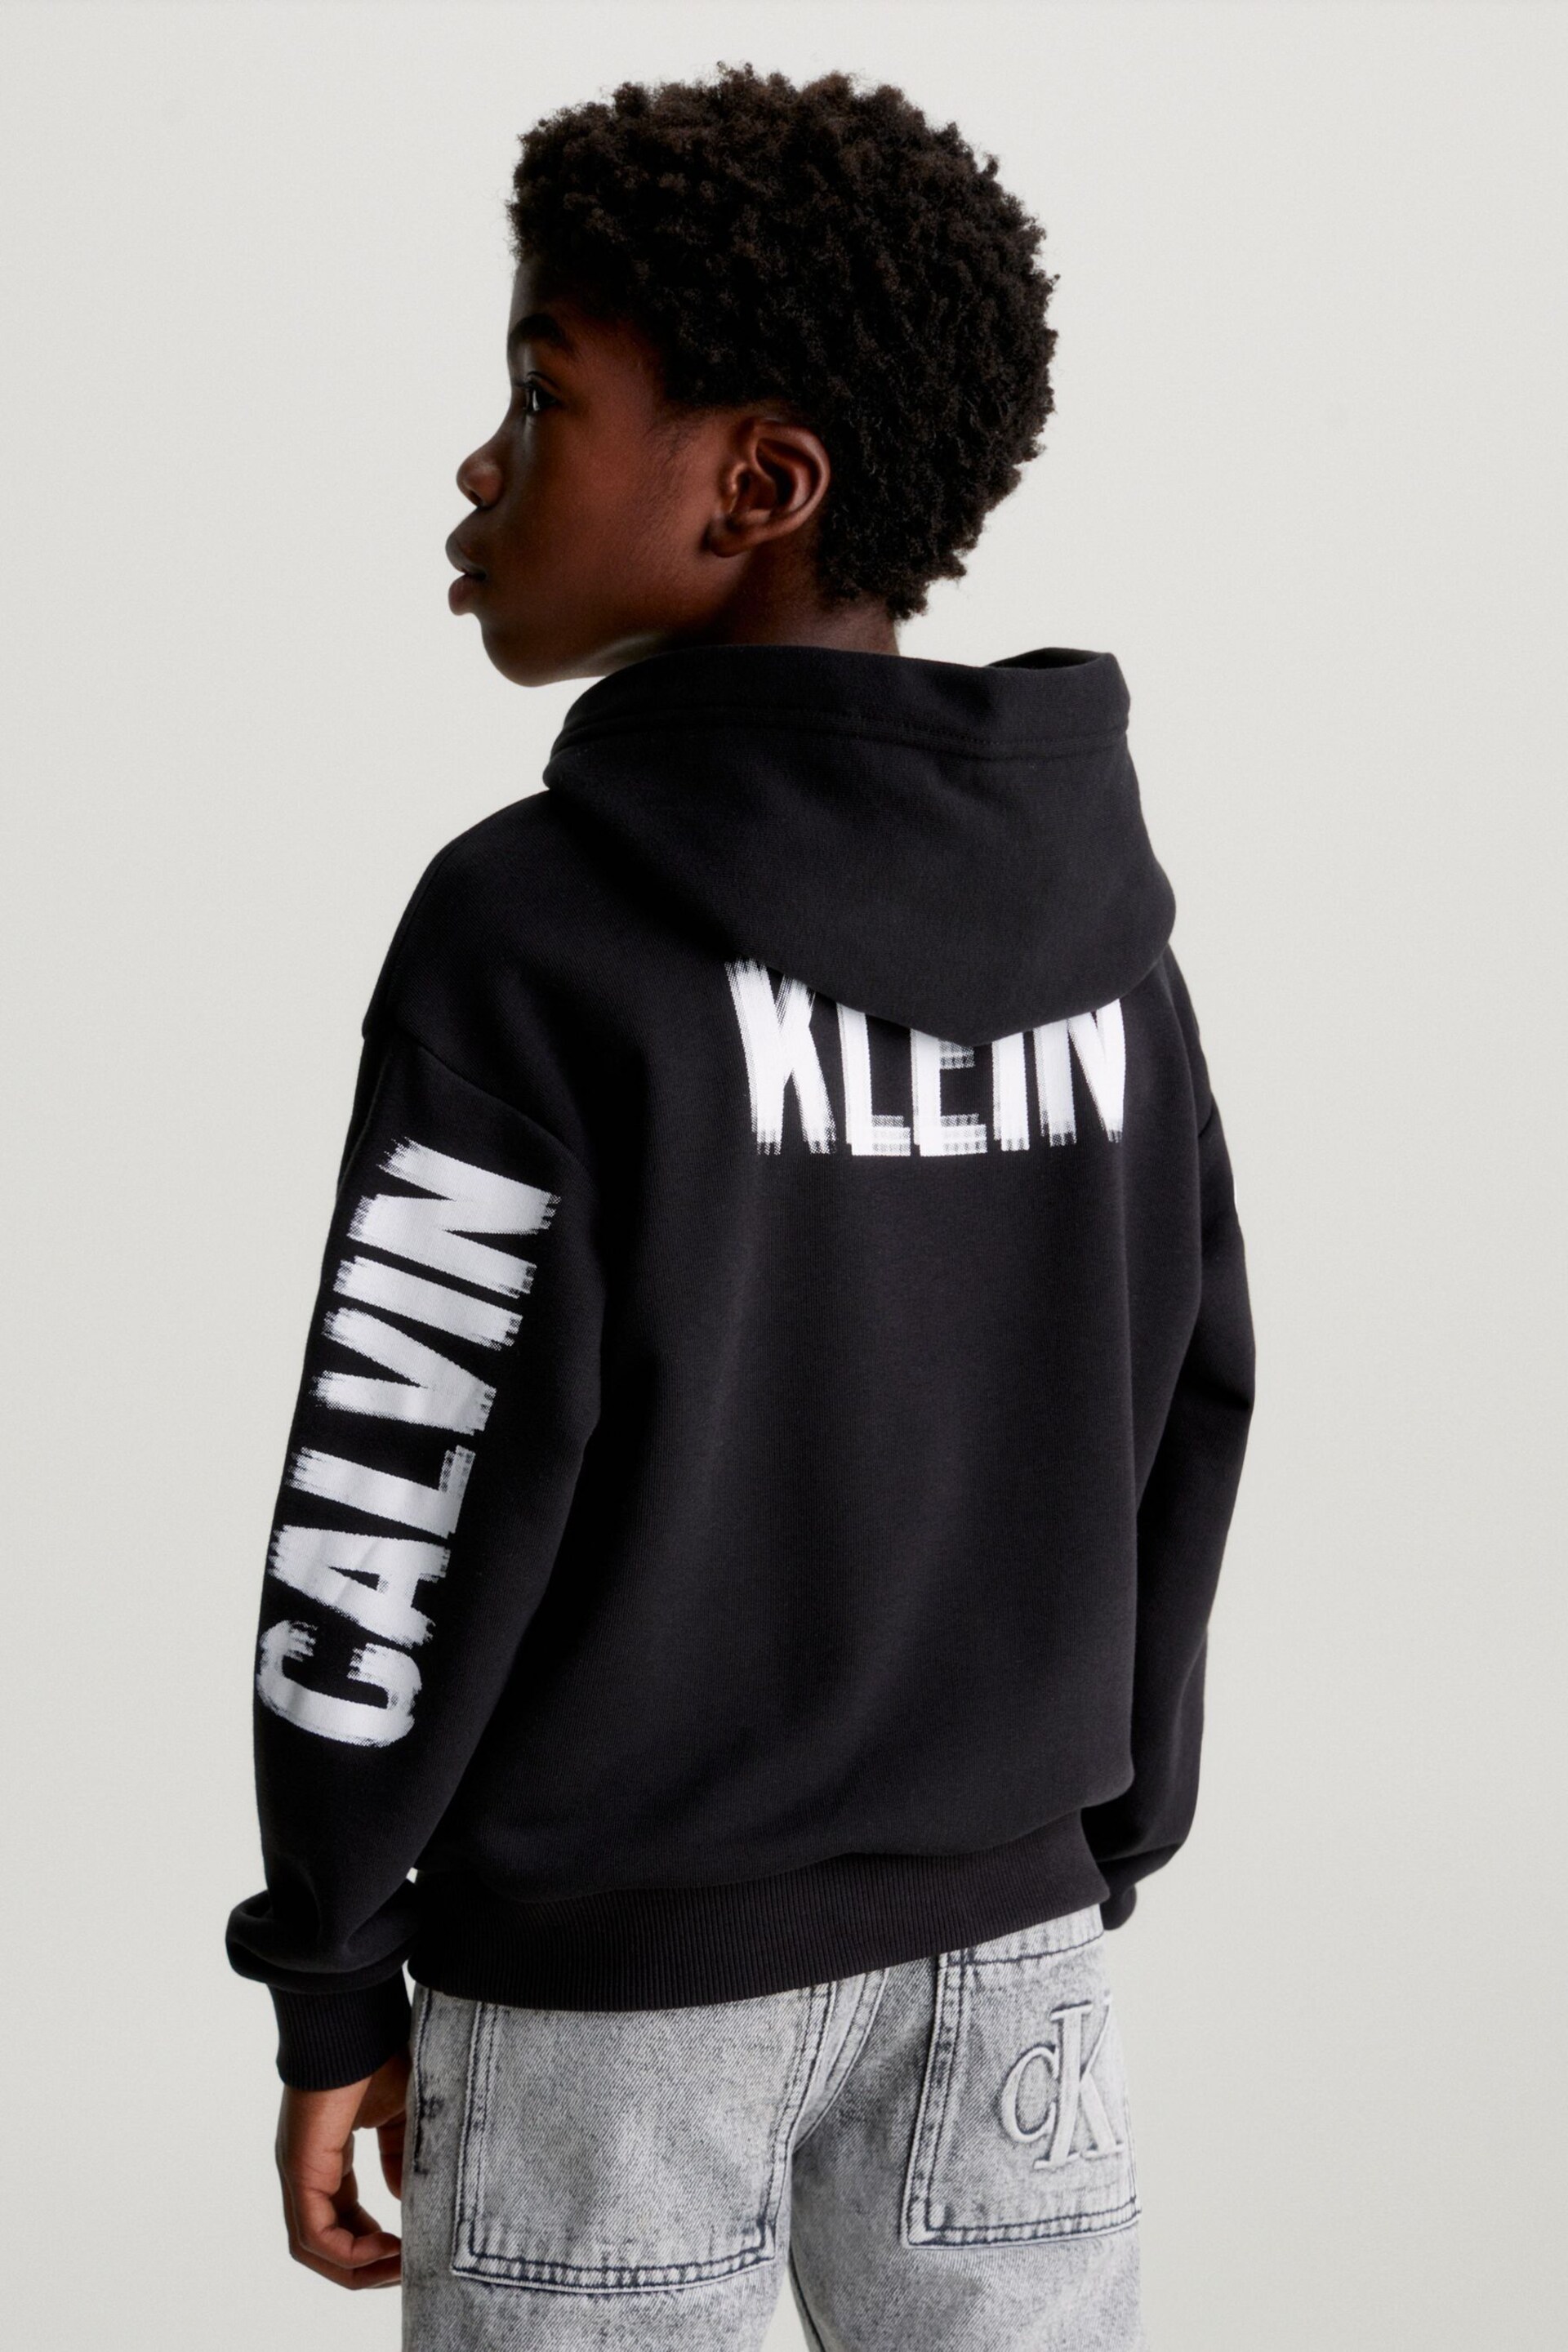 Calvin Klein Jeans Pixel Terry Black Hoodie - Image 2 of 5